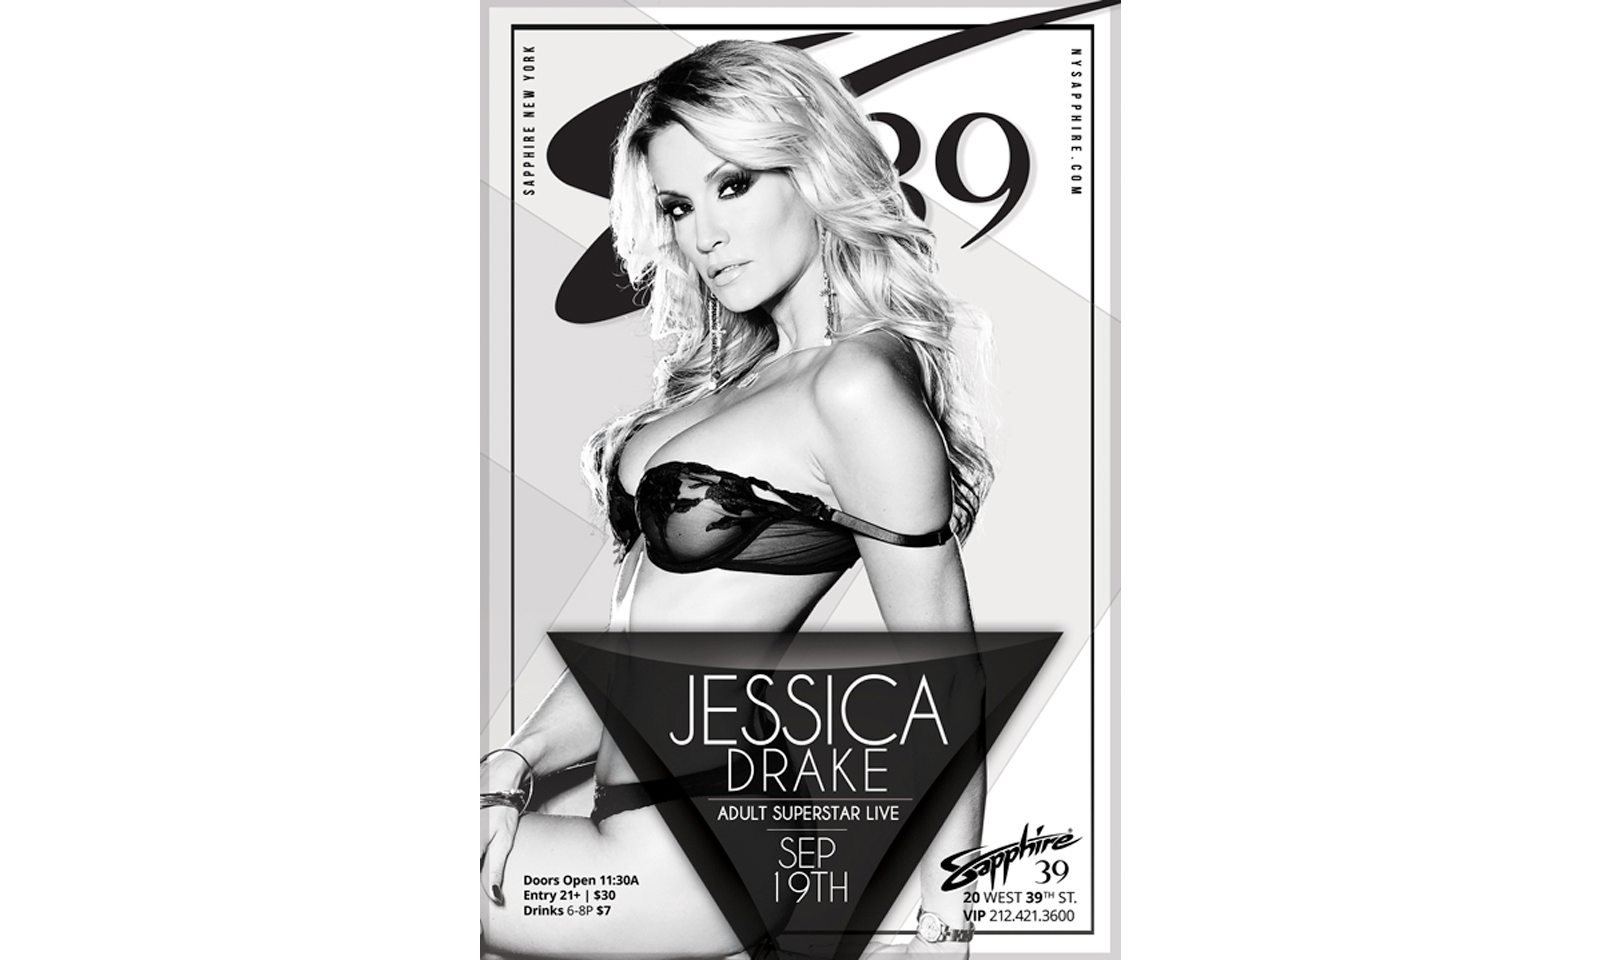 Jessica Drake Headlining at New York’s Sapphire 39